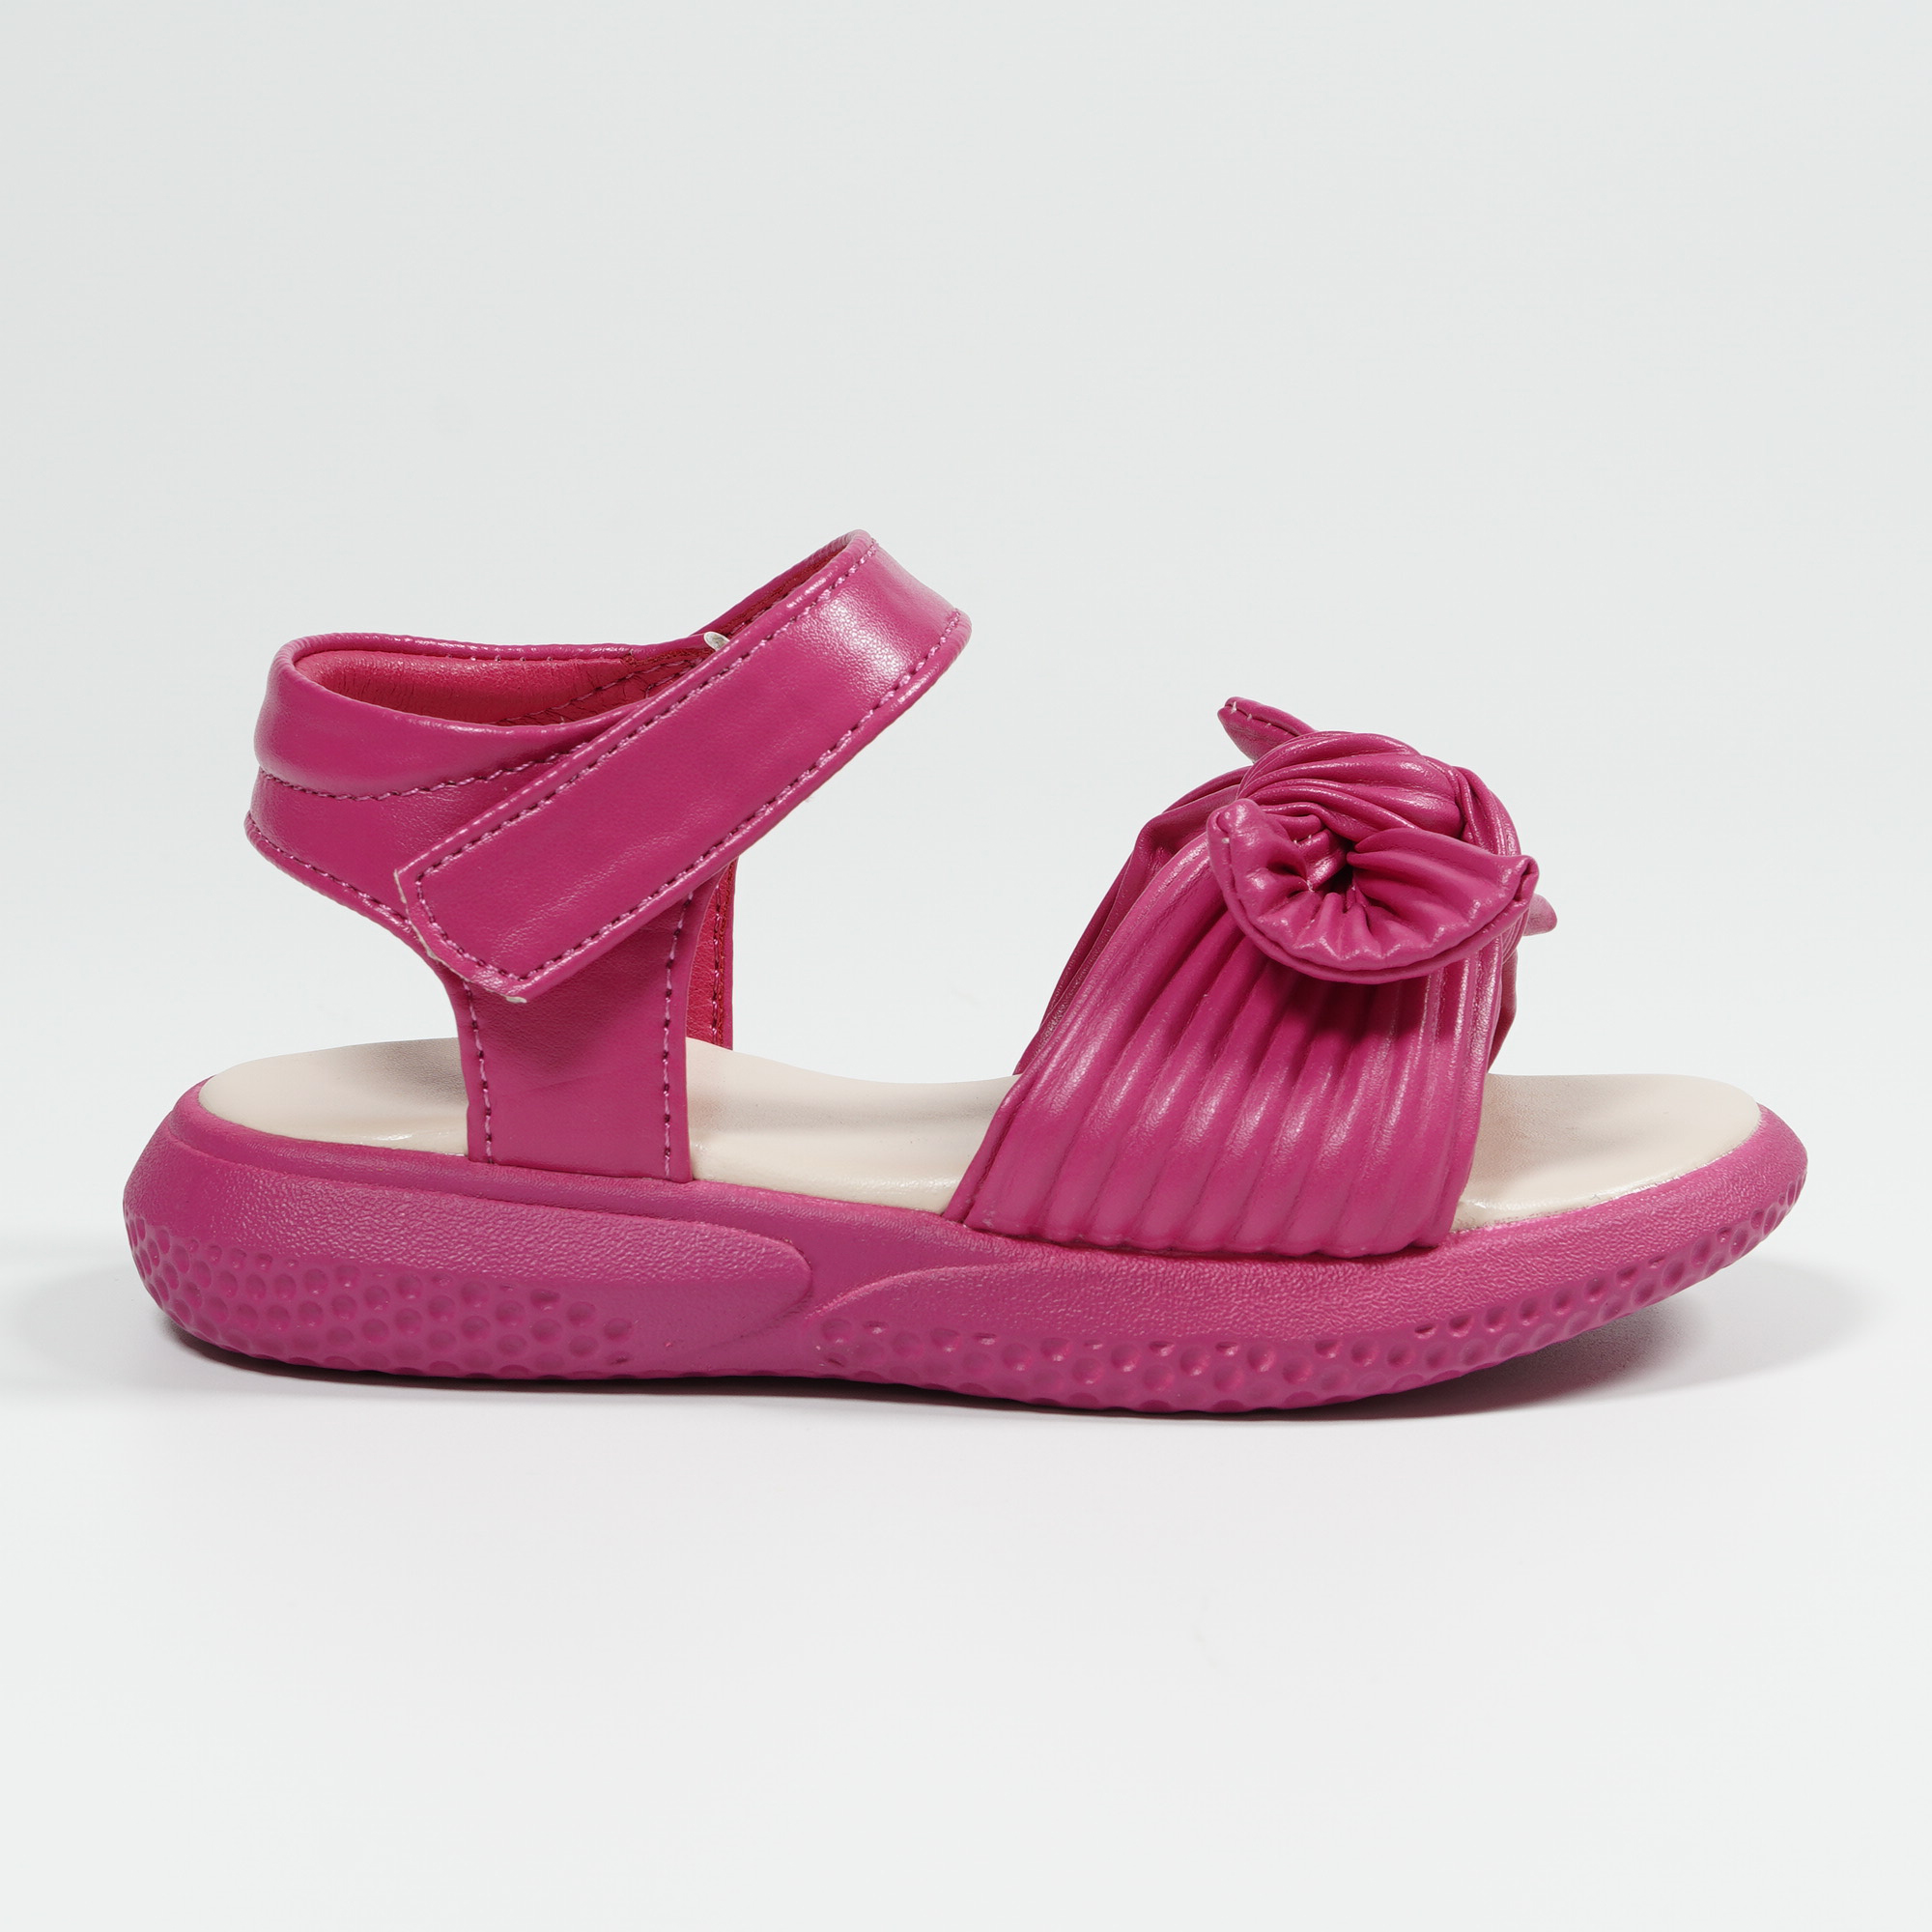 Trend new fashion children’s bow sandals outdoor leisure soft girls sandals